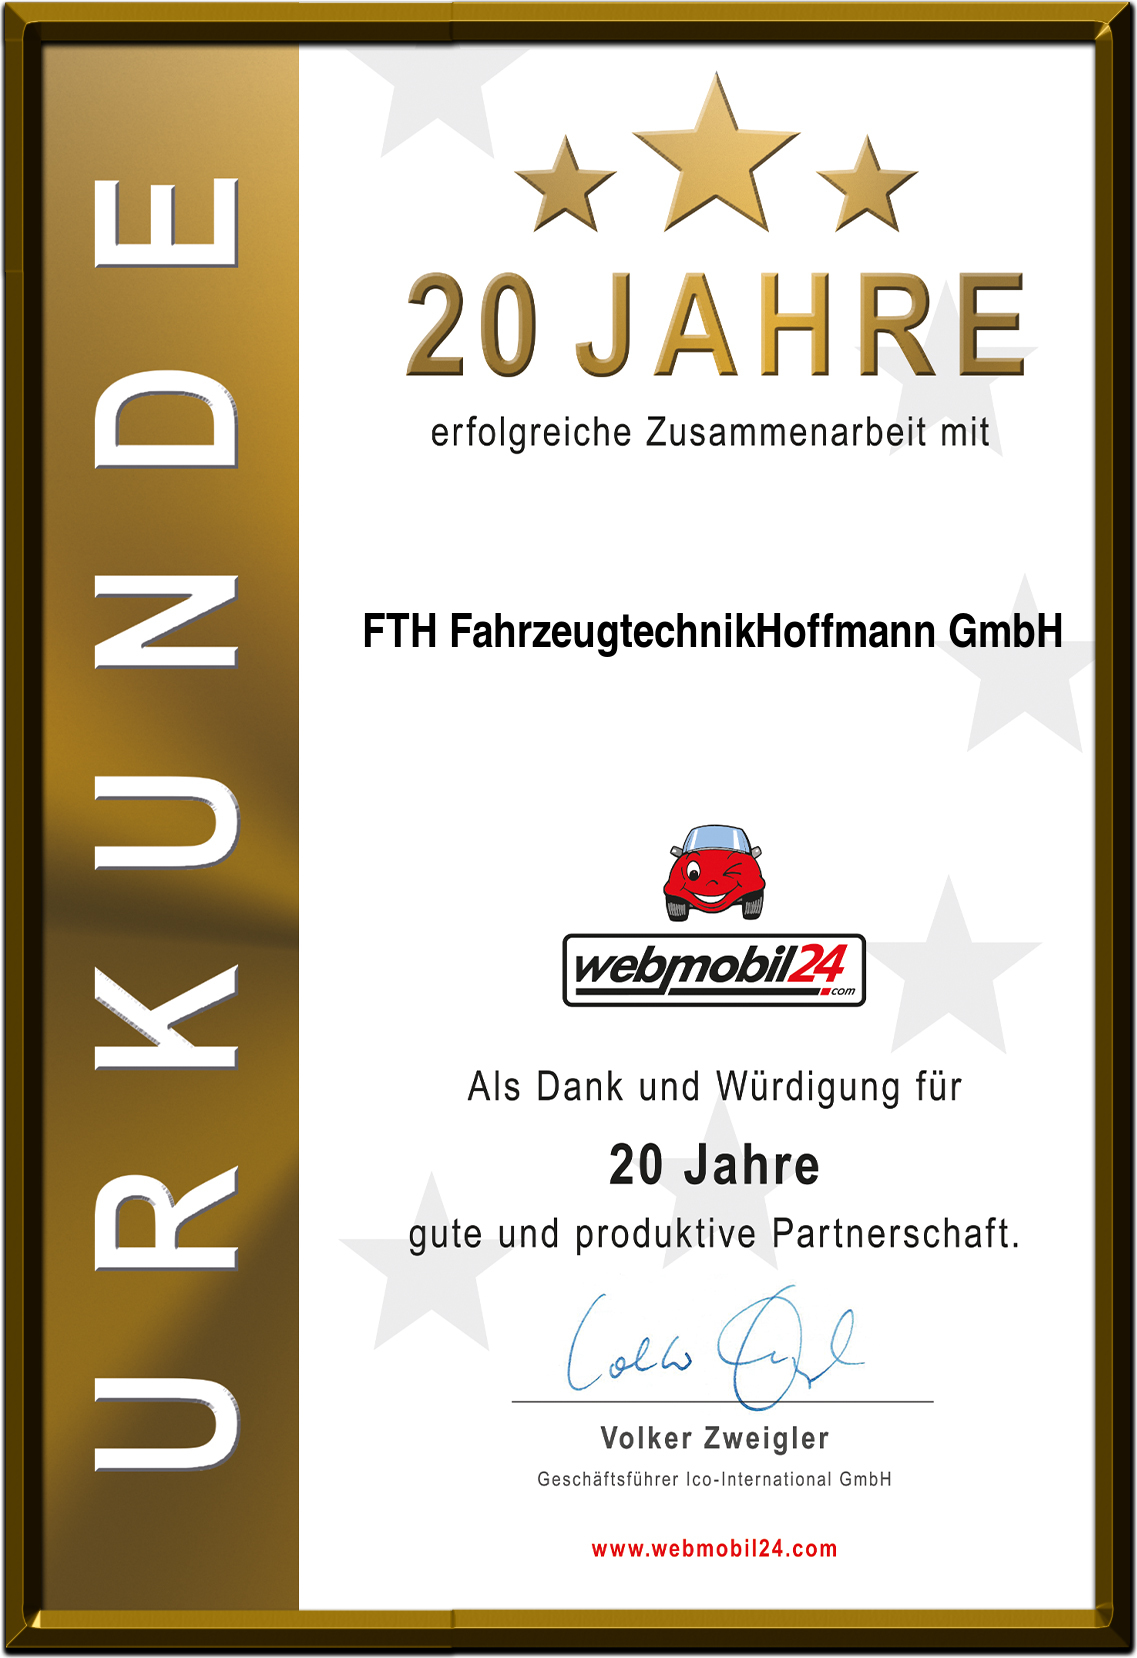 FTH FahrzeugtechnikHoffmann GmbH